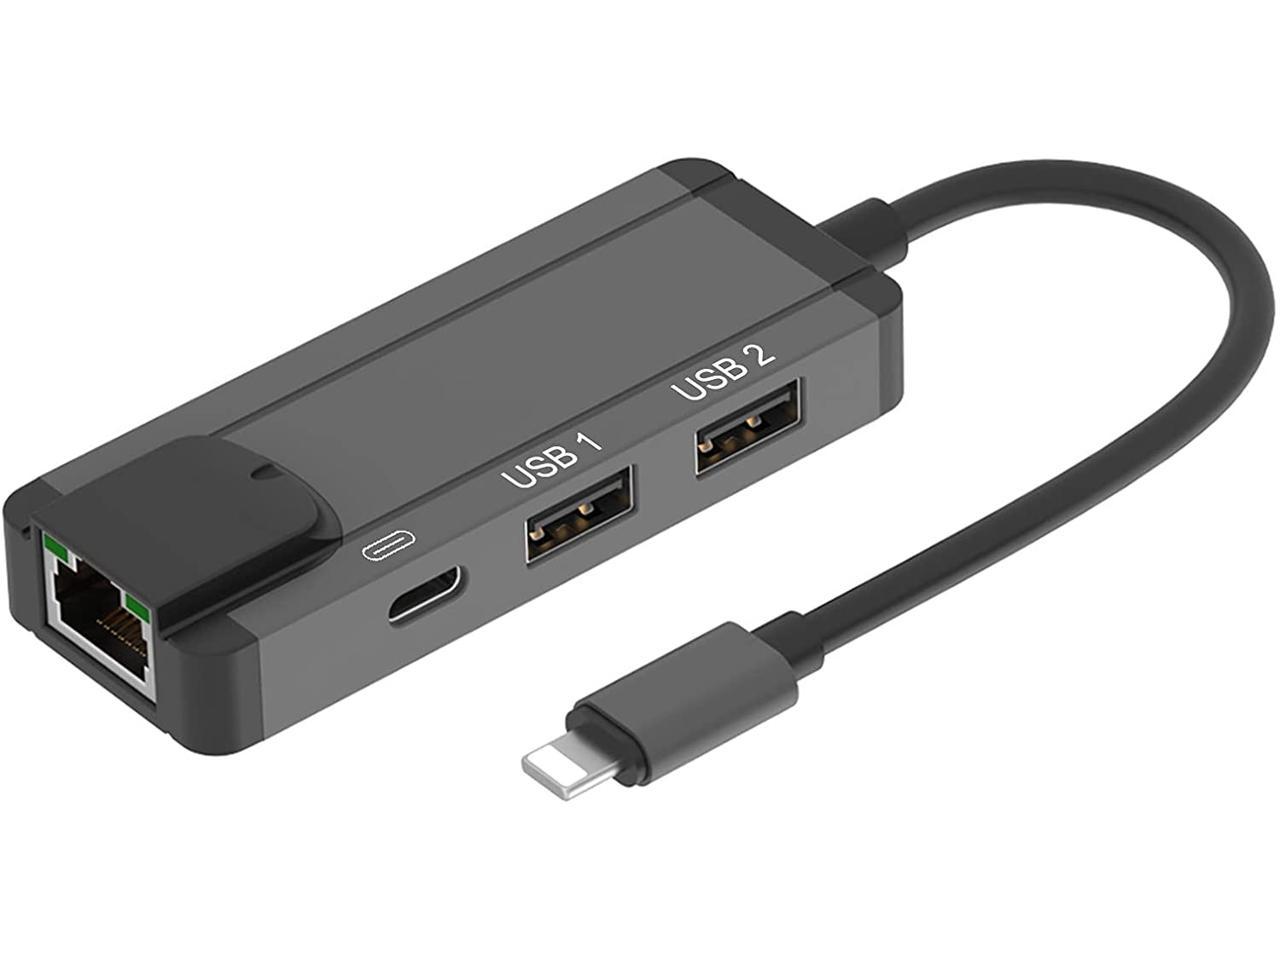 RJ45 LAN Netzwerkkabel to Ethernet Adapter USB Reader Für iPhone iPad 